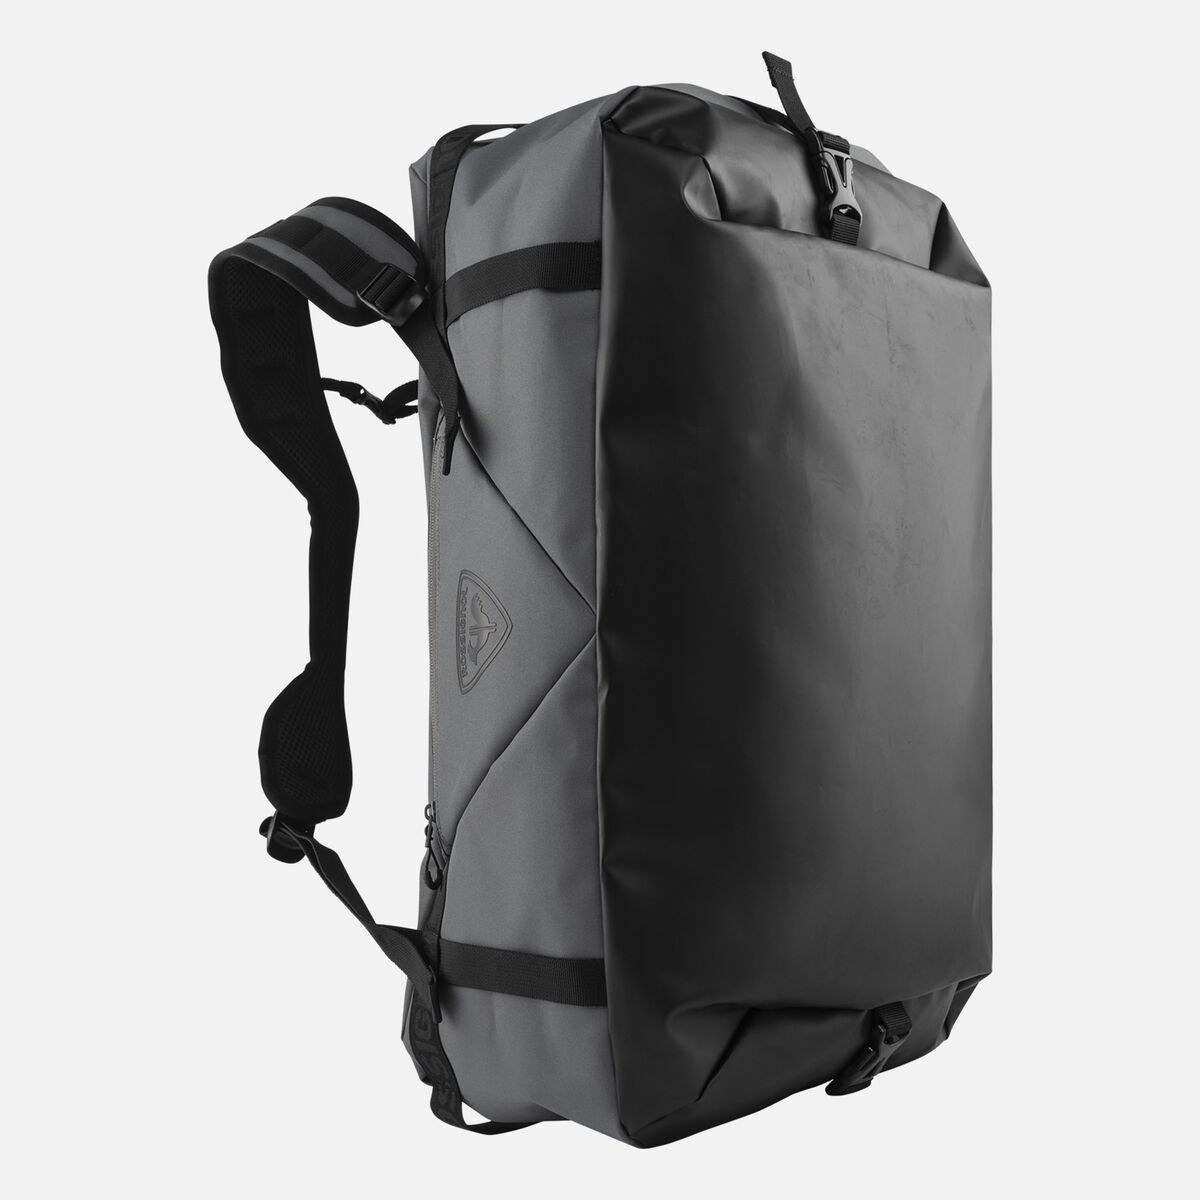 DUFFLE BAG 60, Carbon Grey - Black, 60 l